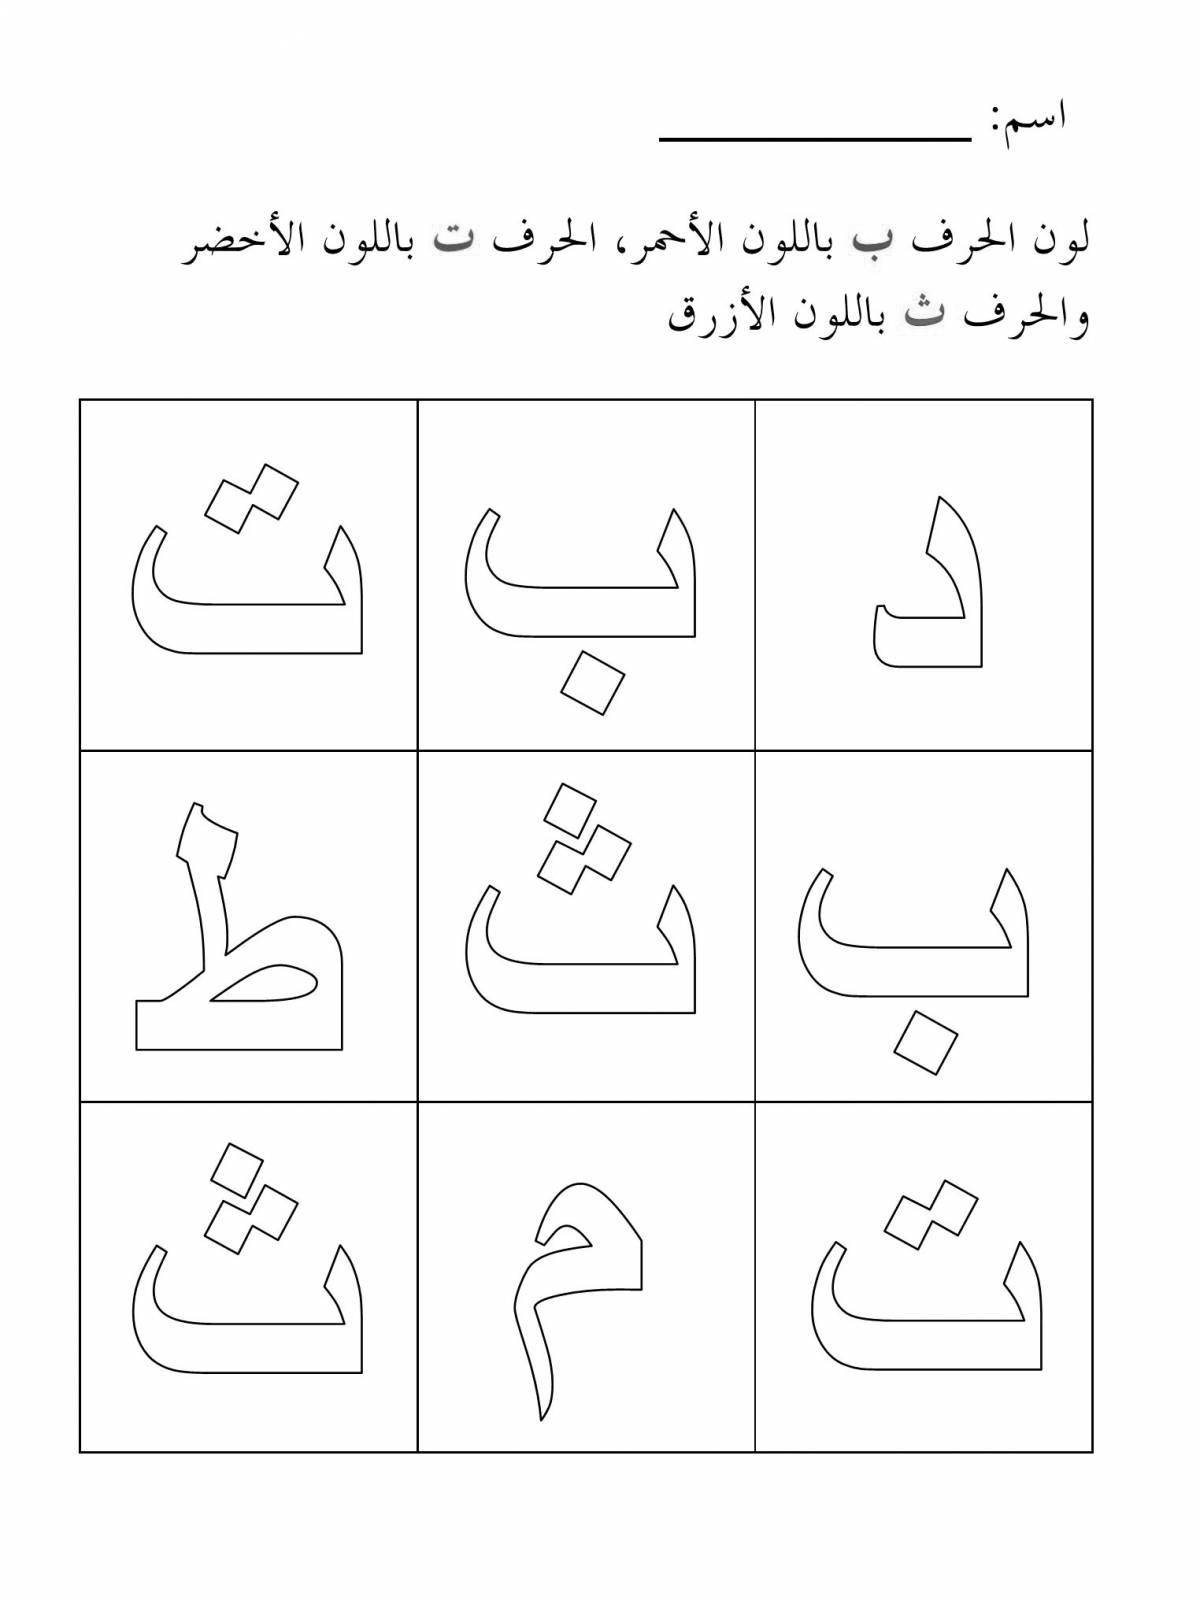 Радостная раскраска арабскими буквами